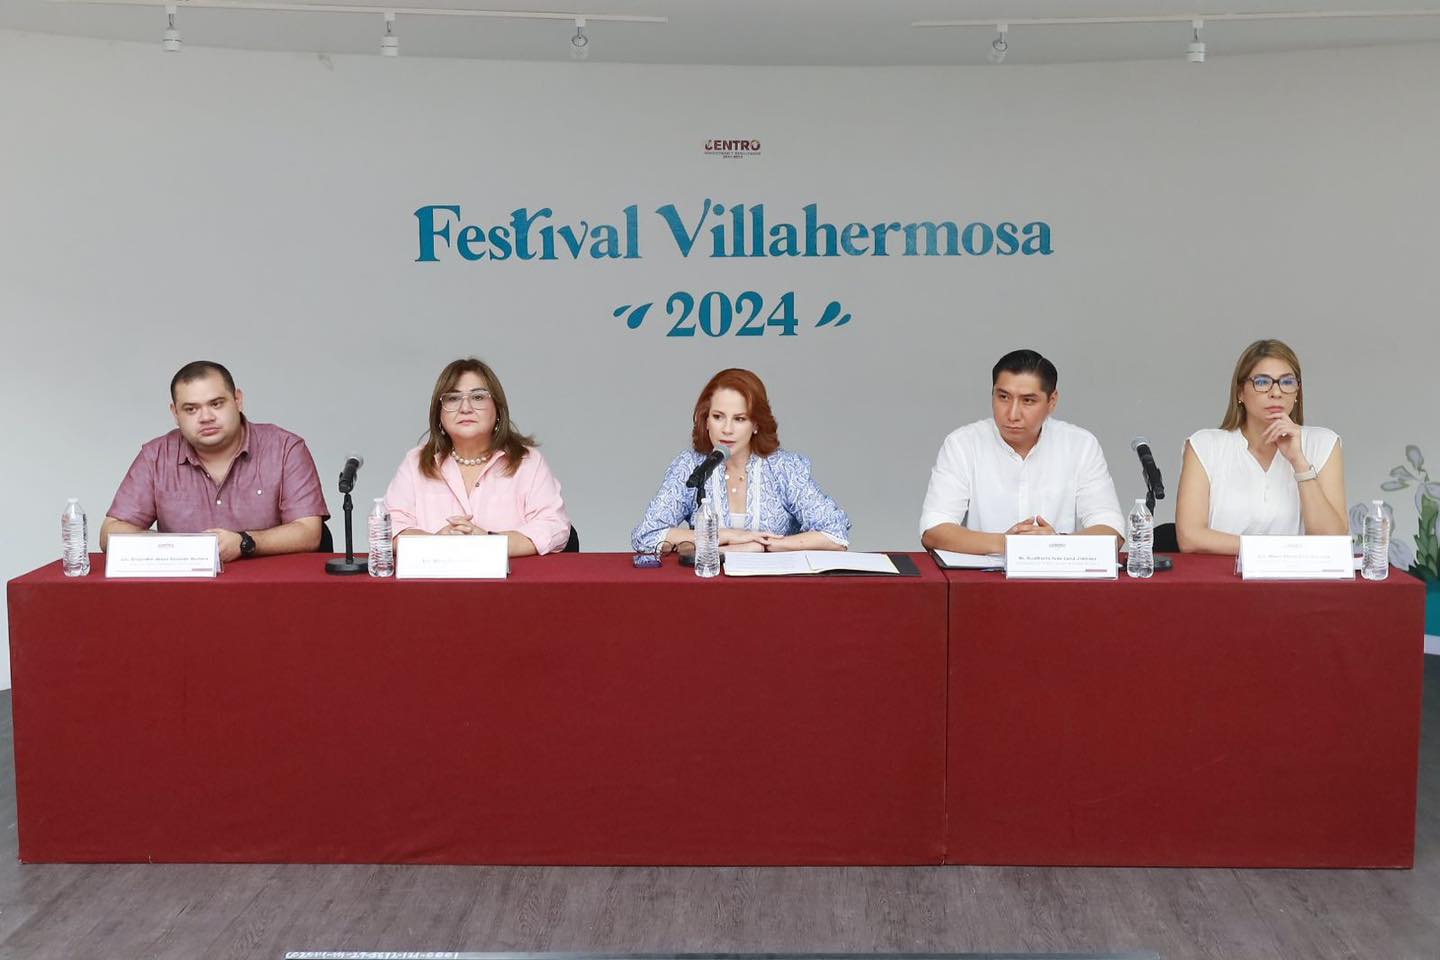 Festival de Villahermosa 2024 será del 20 al 24 de junio